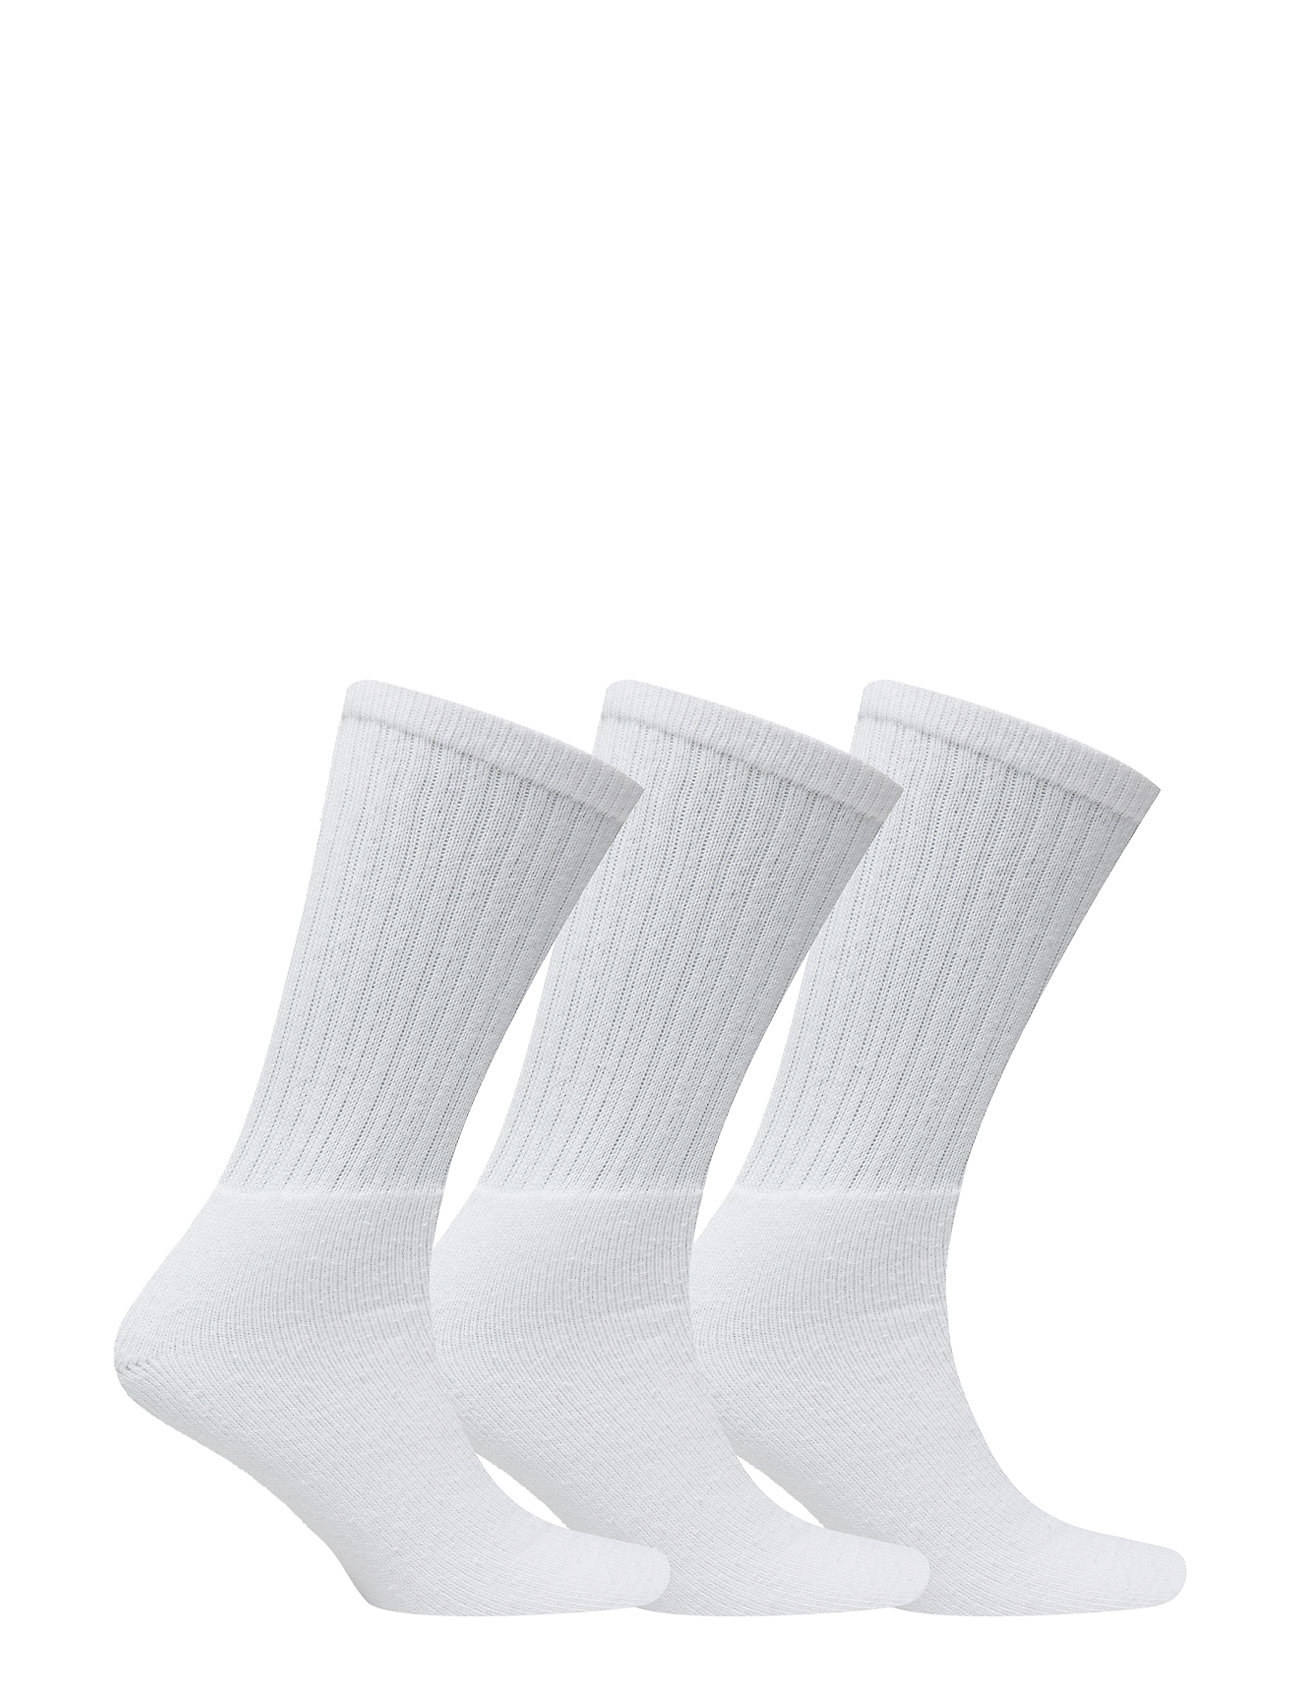 Claudio - Claudio socks tennis 3-pack - laveste priser - white - 1